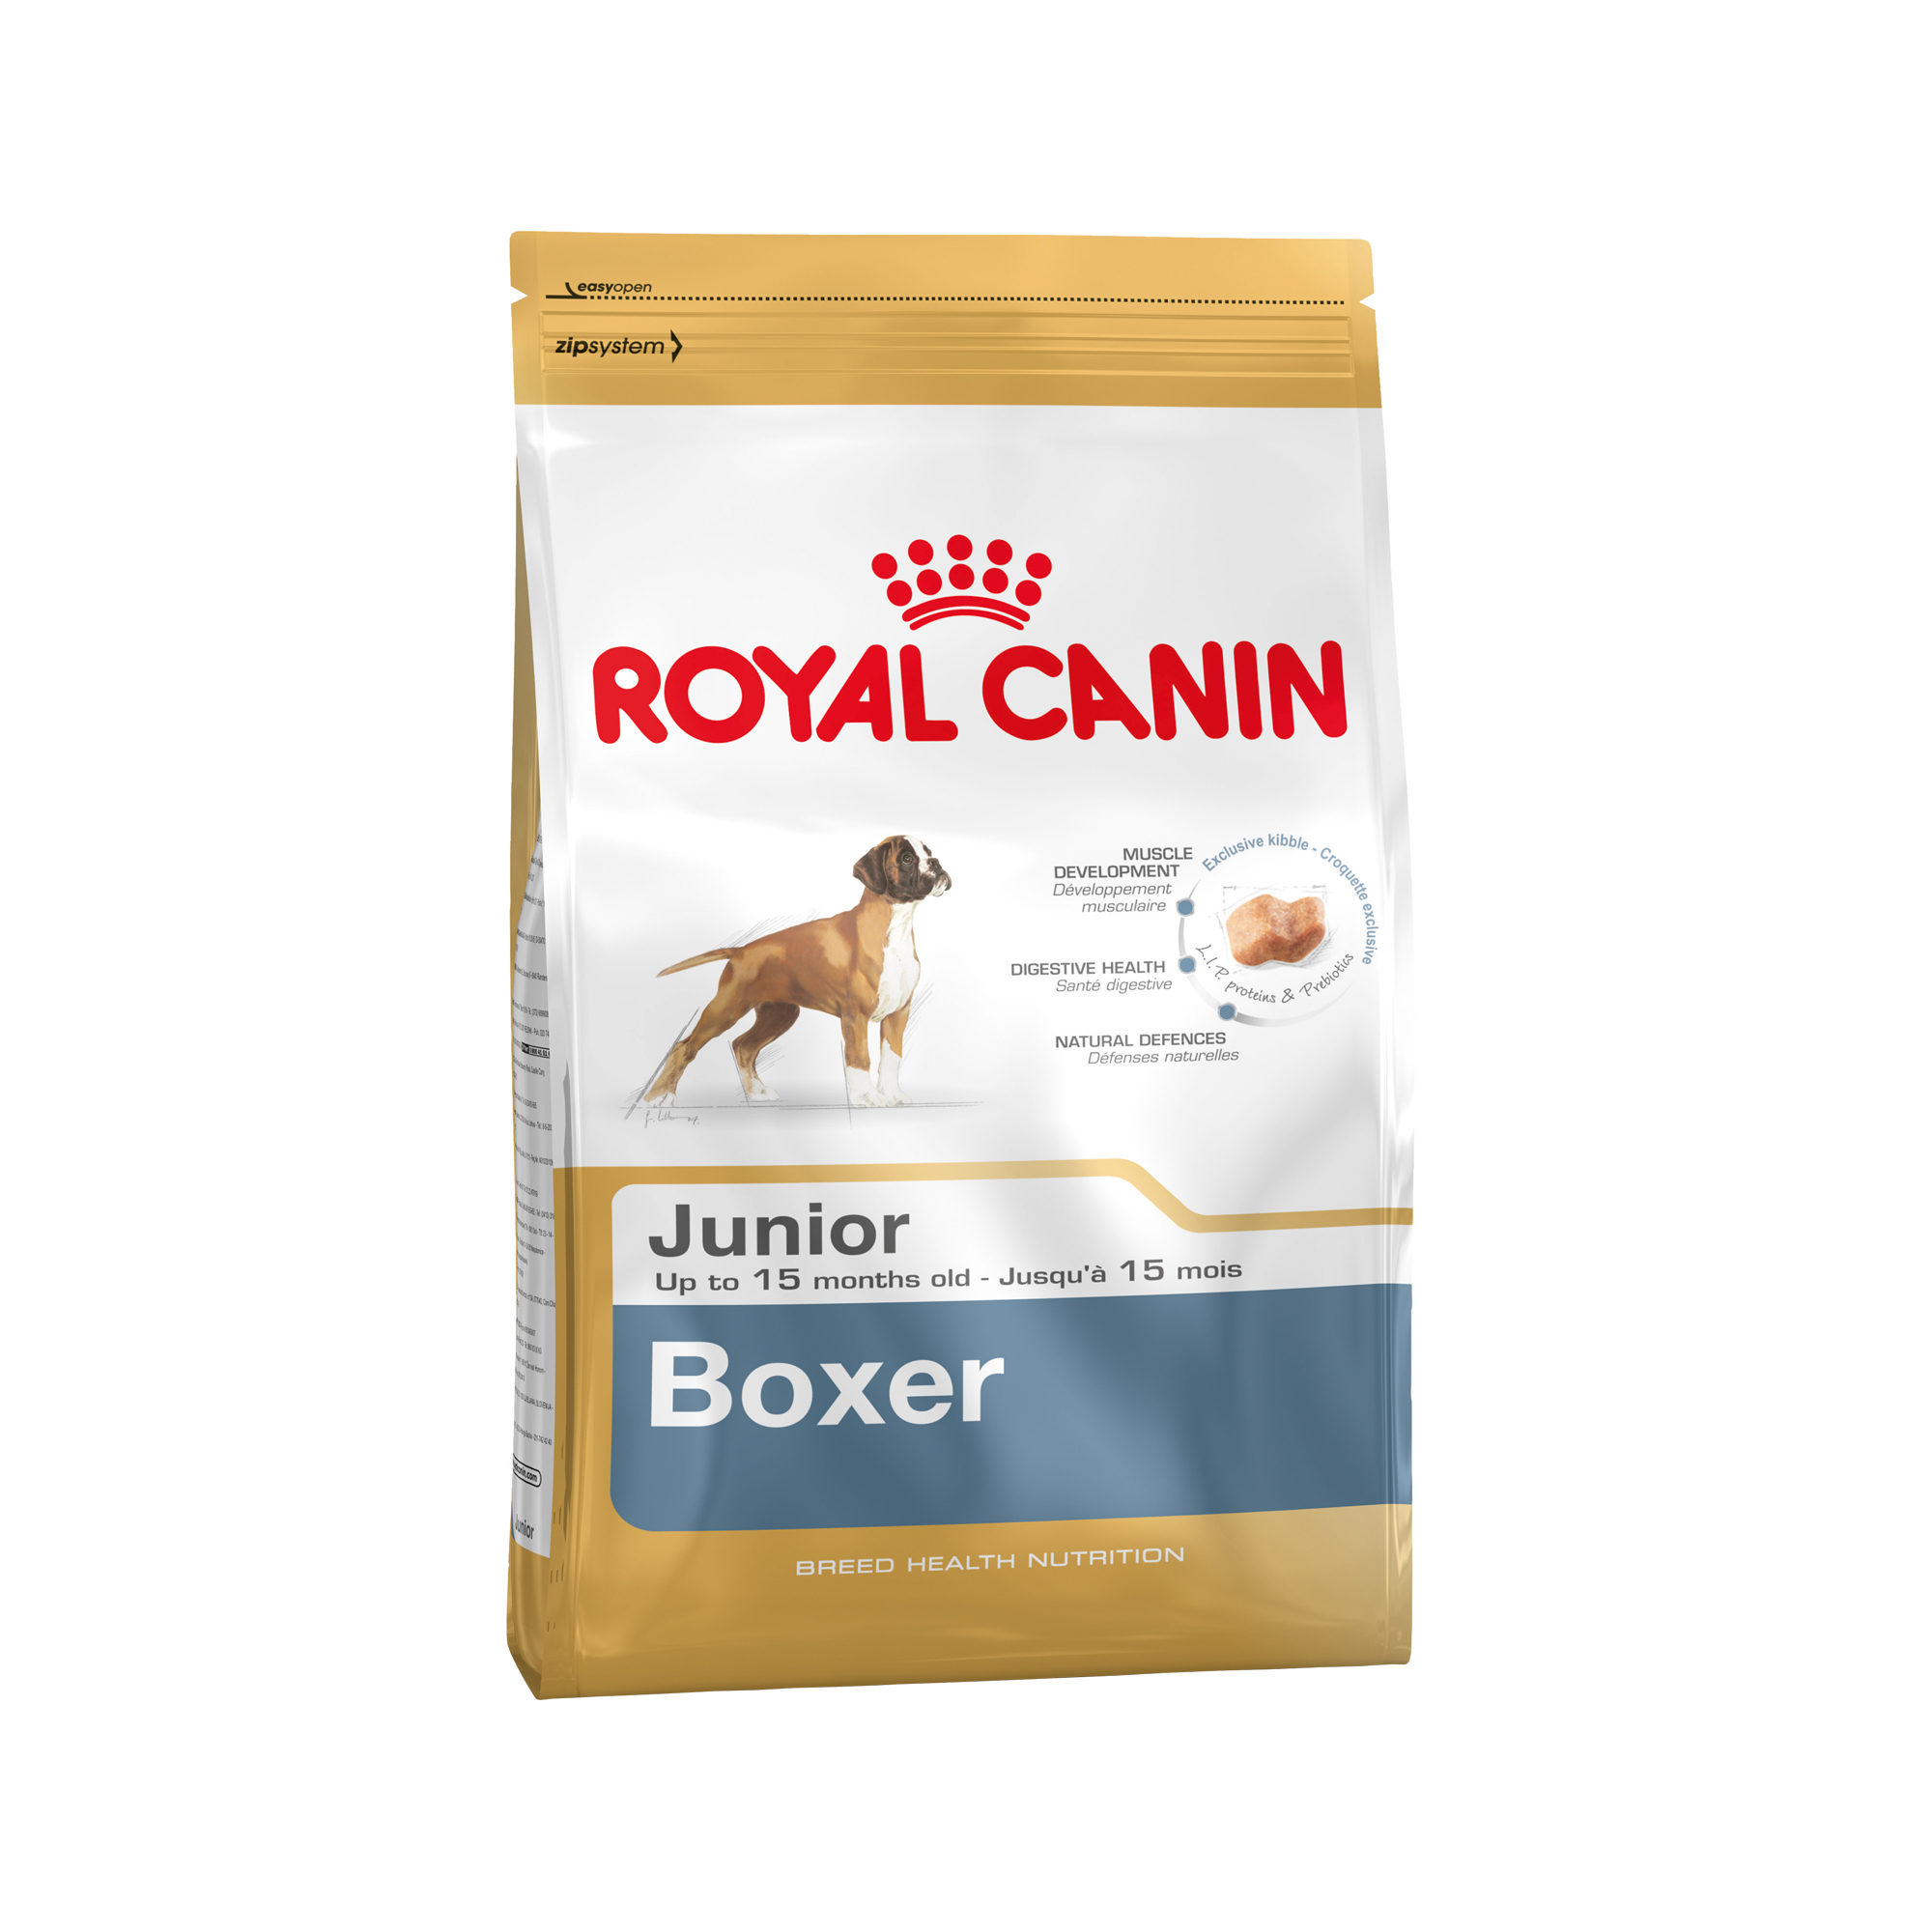 ROYAL CANIN Boxer Junior 12 kg, 1er Pack (1 x 12 kg)